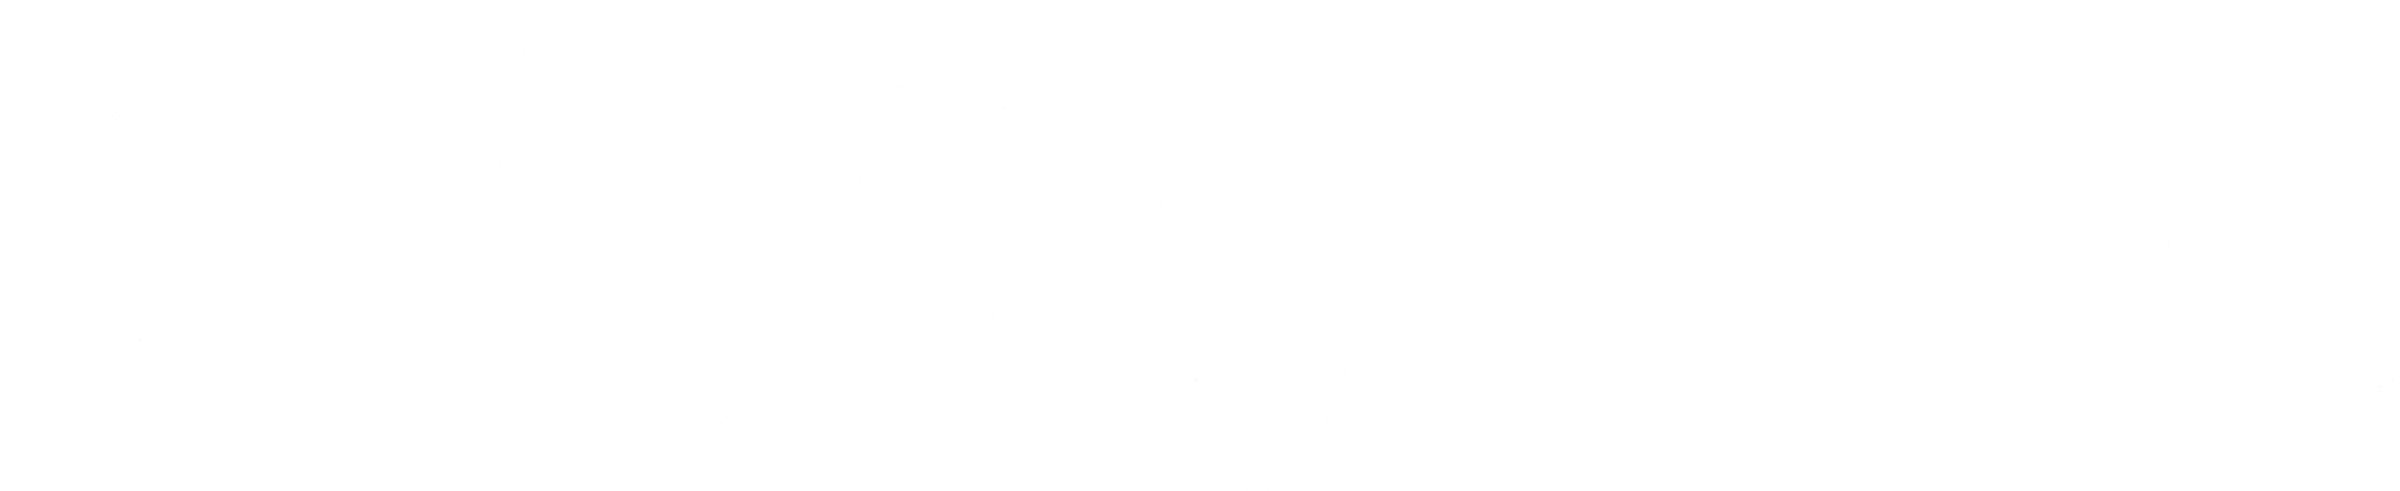 SkyDrive Logo - Skydrive Logo PNG Transparent & SVG Vector